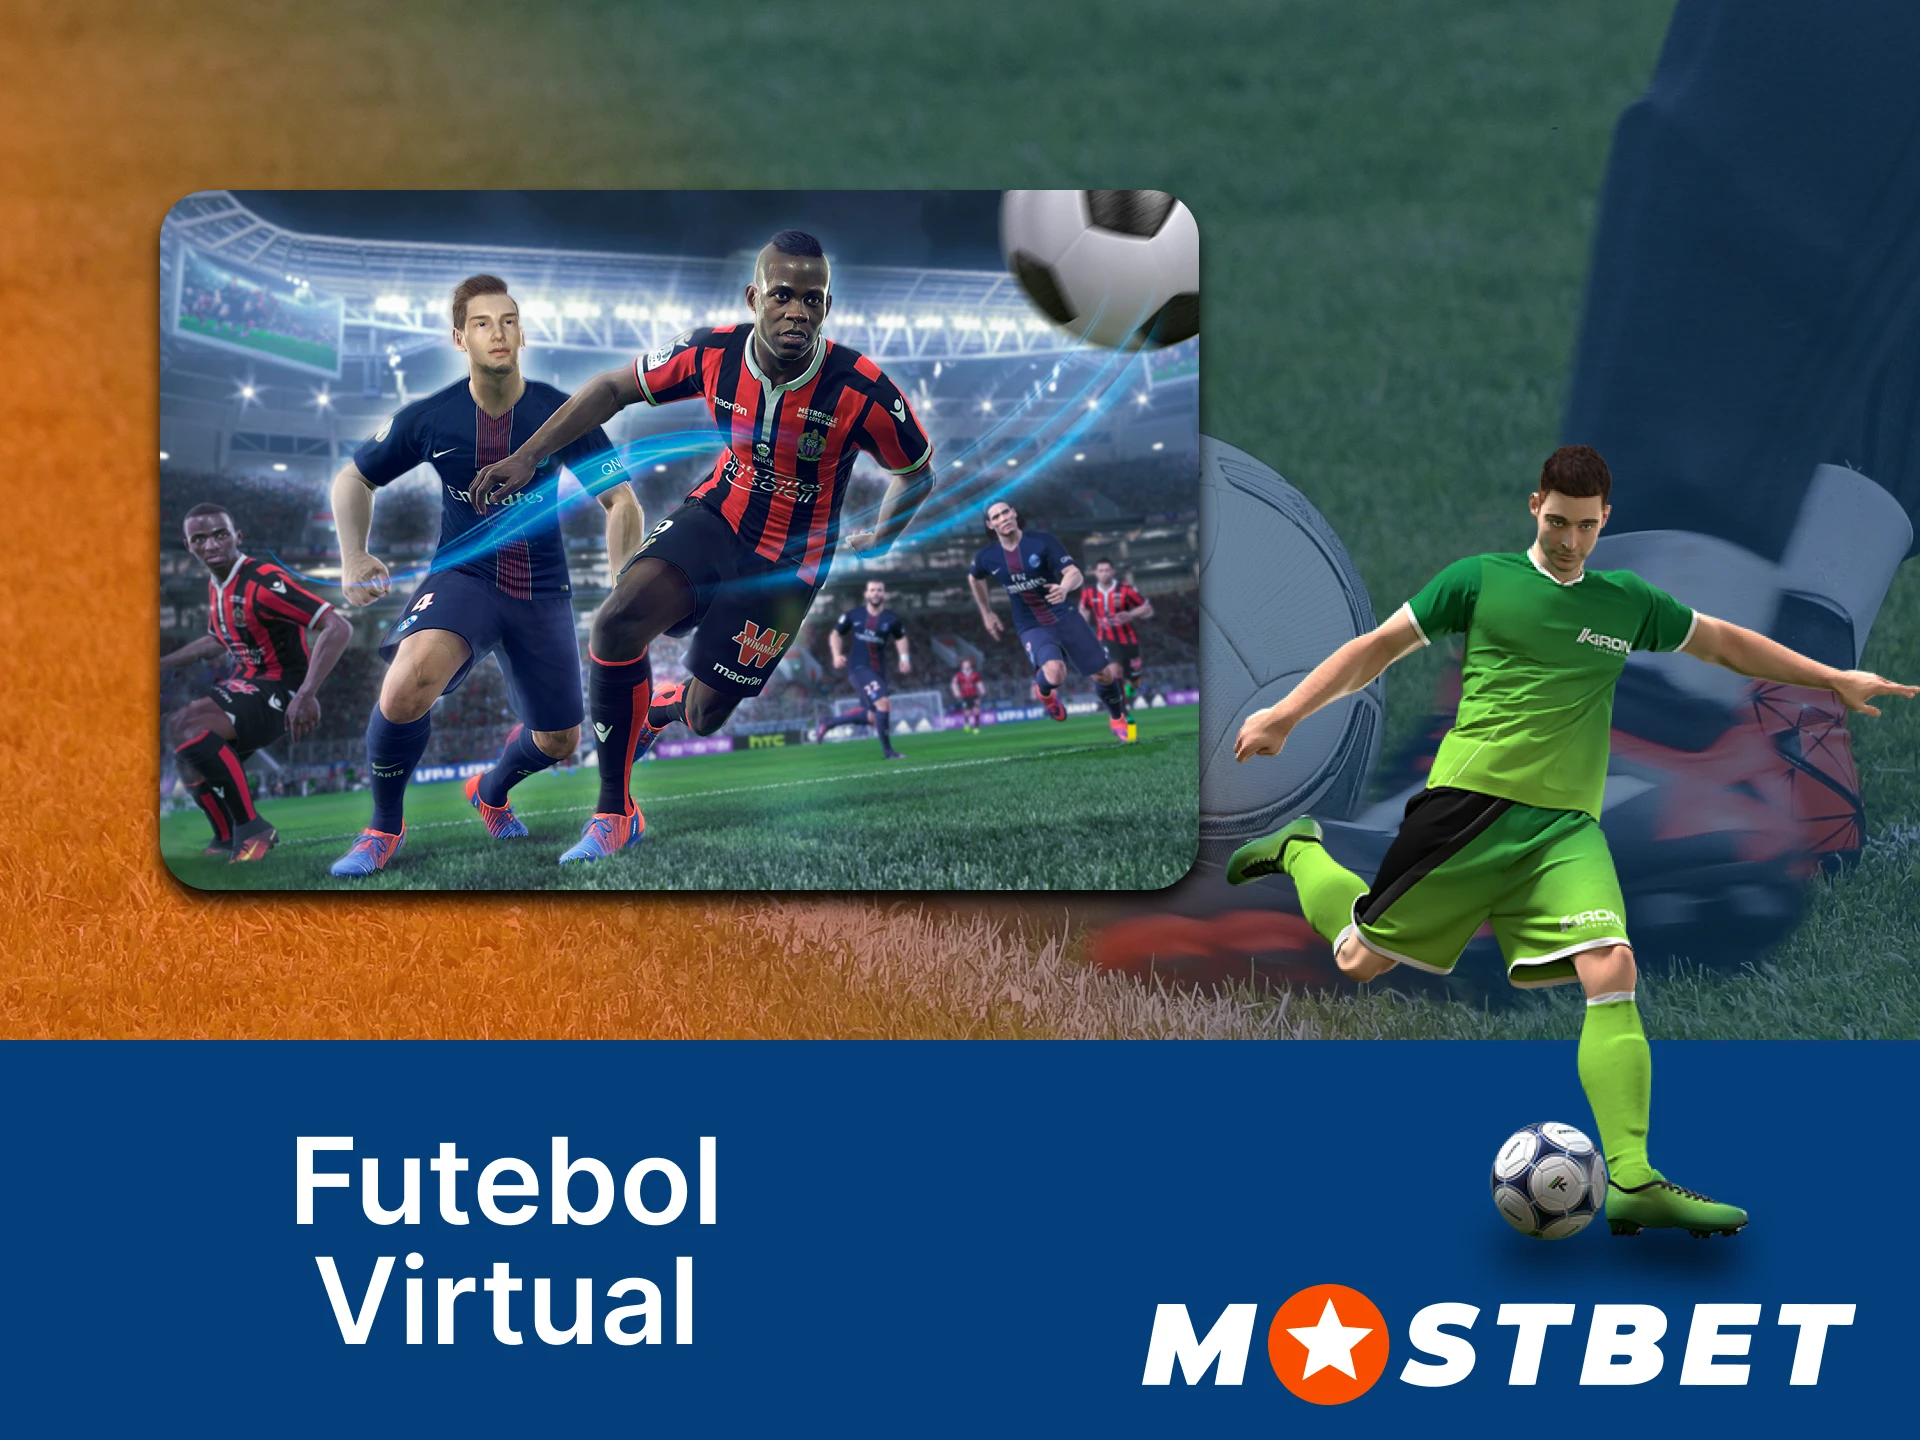 Na Mostbet, você pode fazer apostas em eventos esportivos virtuais gerados para você.